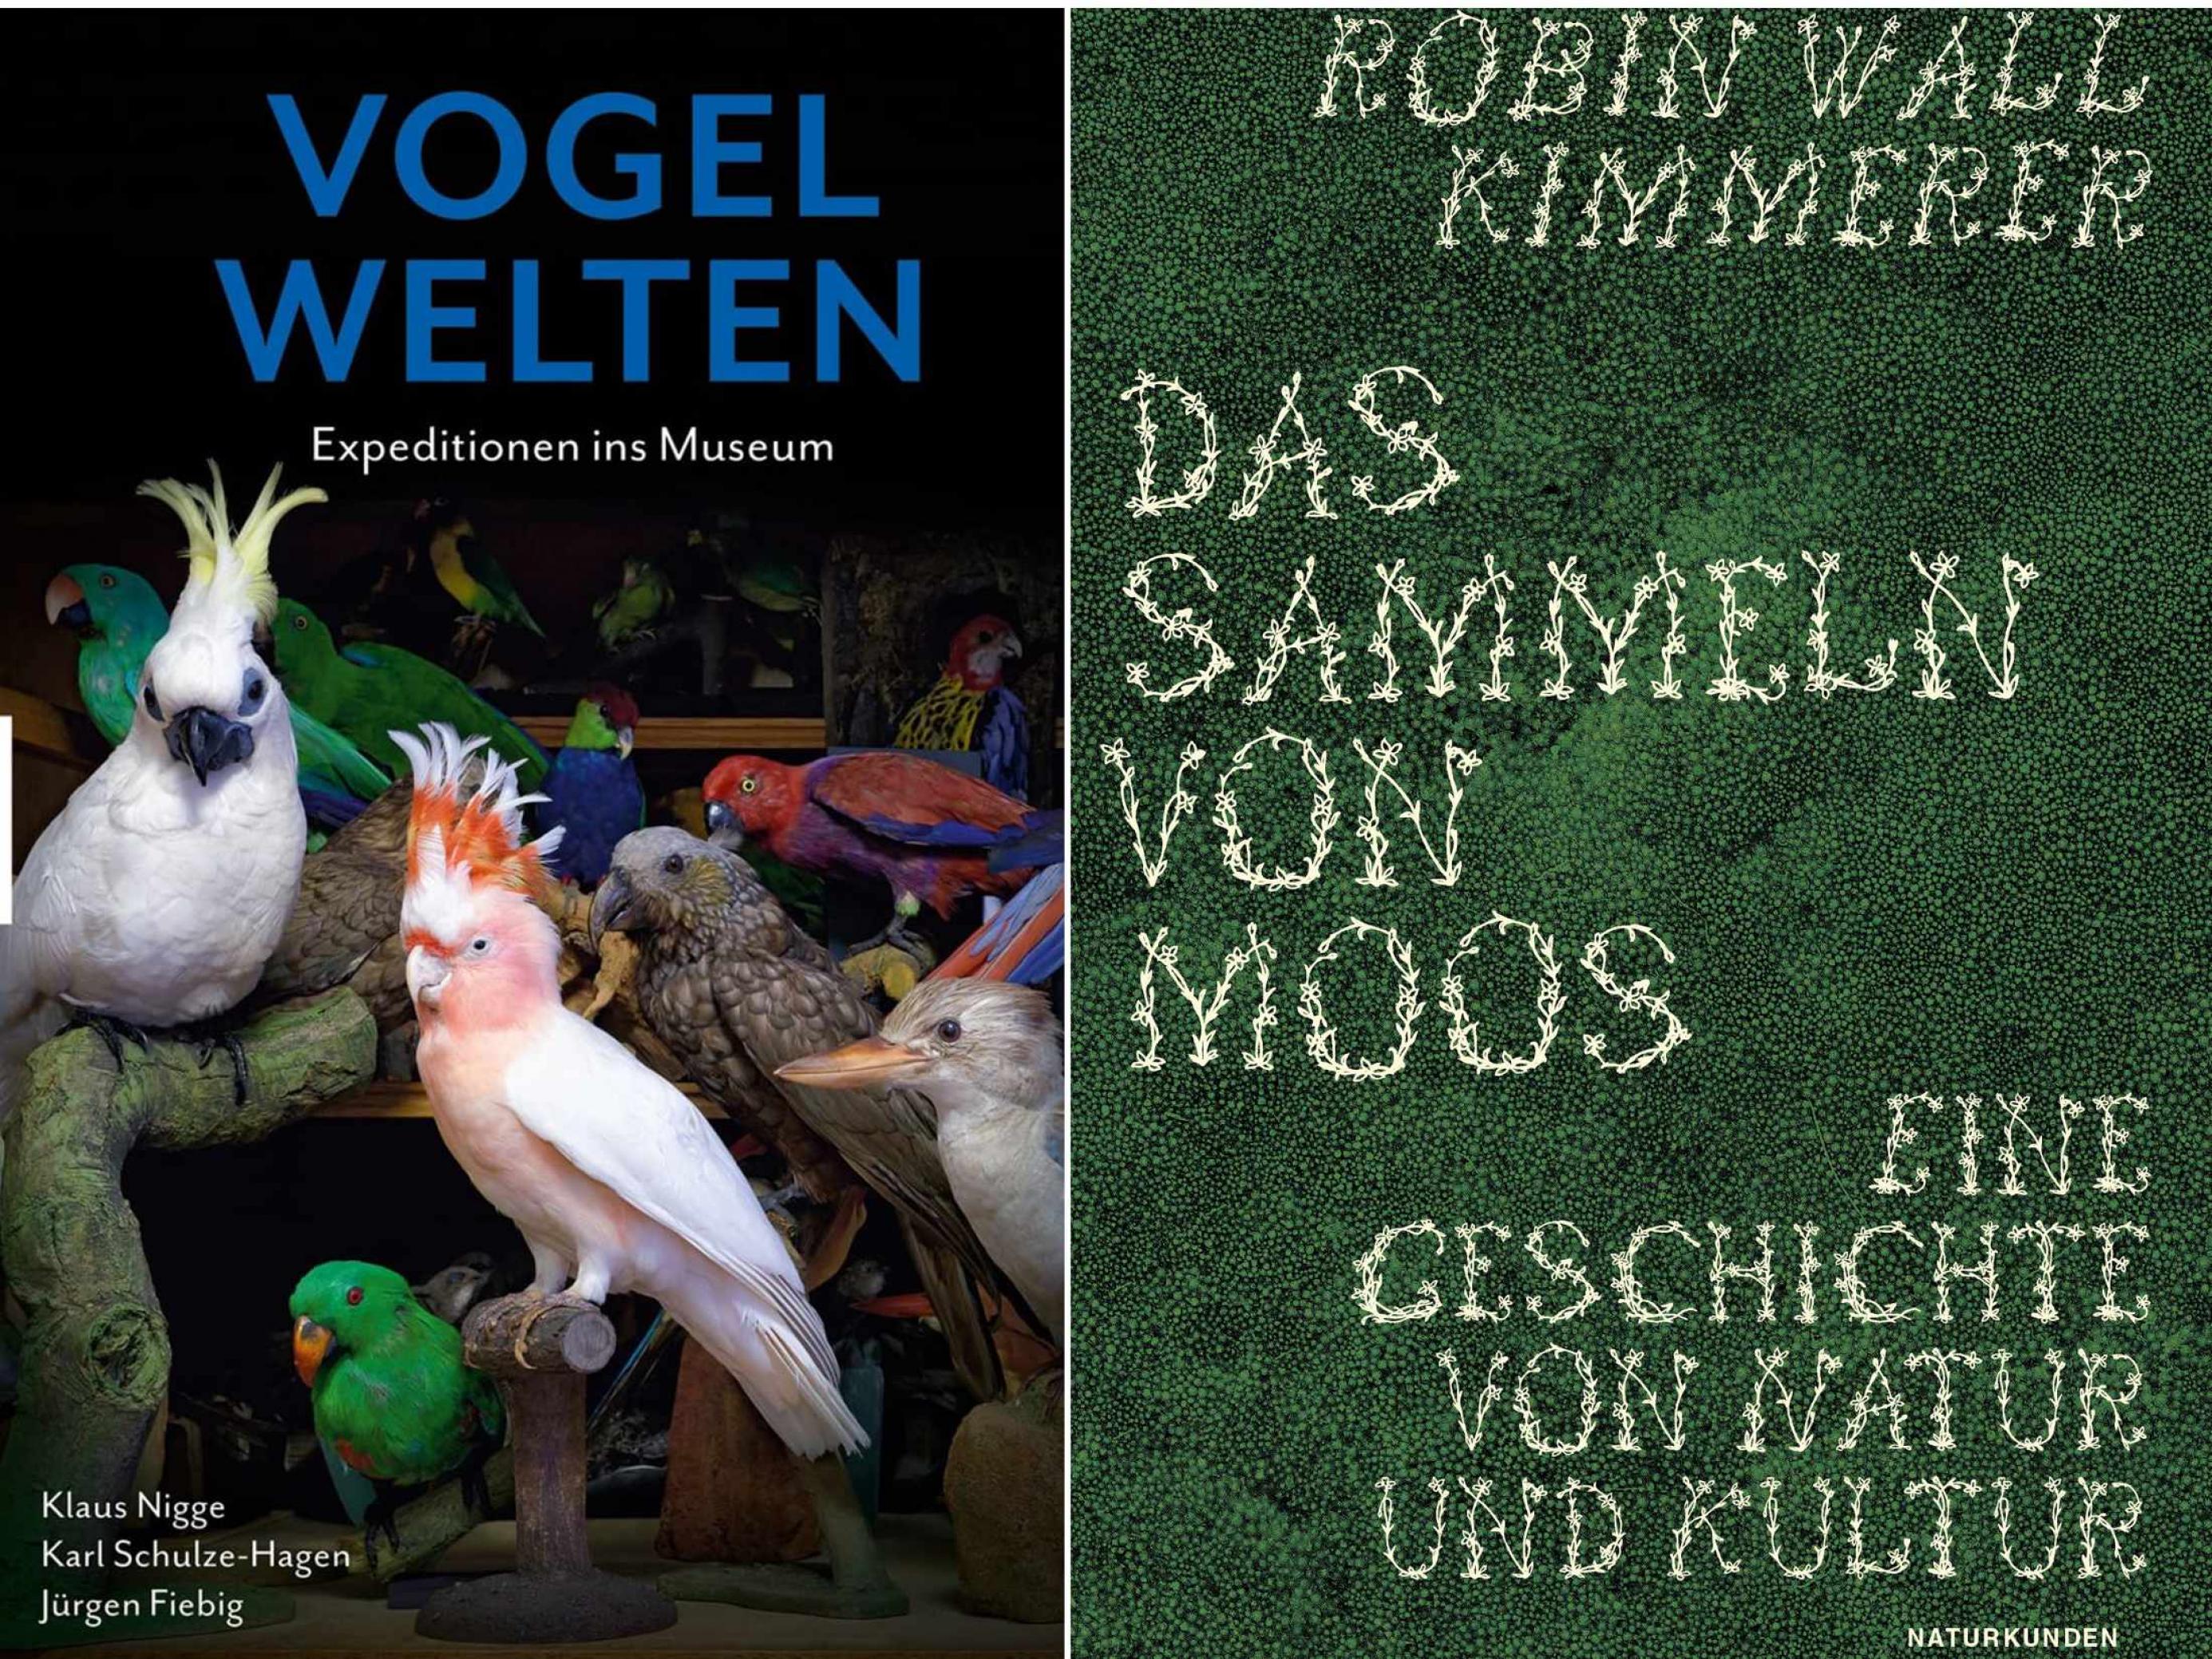 Die Cover der beiden Bücher „Vogelwelten“ und „Das Sammeln von Moos“. Zu sehen sind Fotos ausgestopfter Papageien und von grünem Moos.